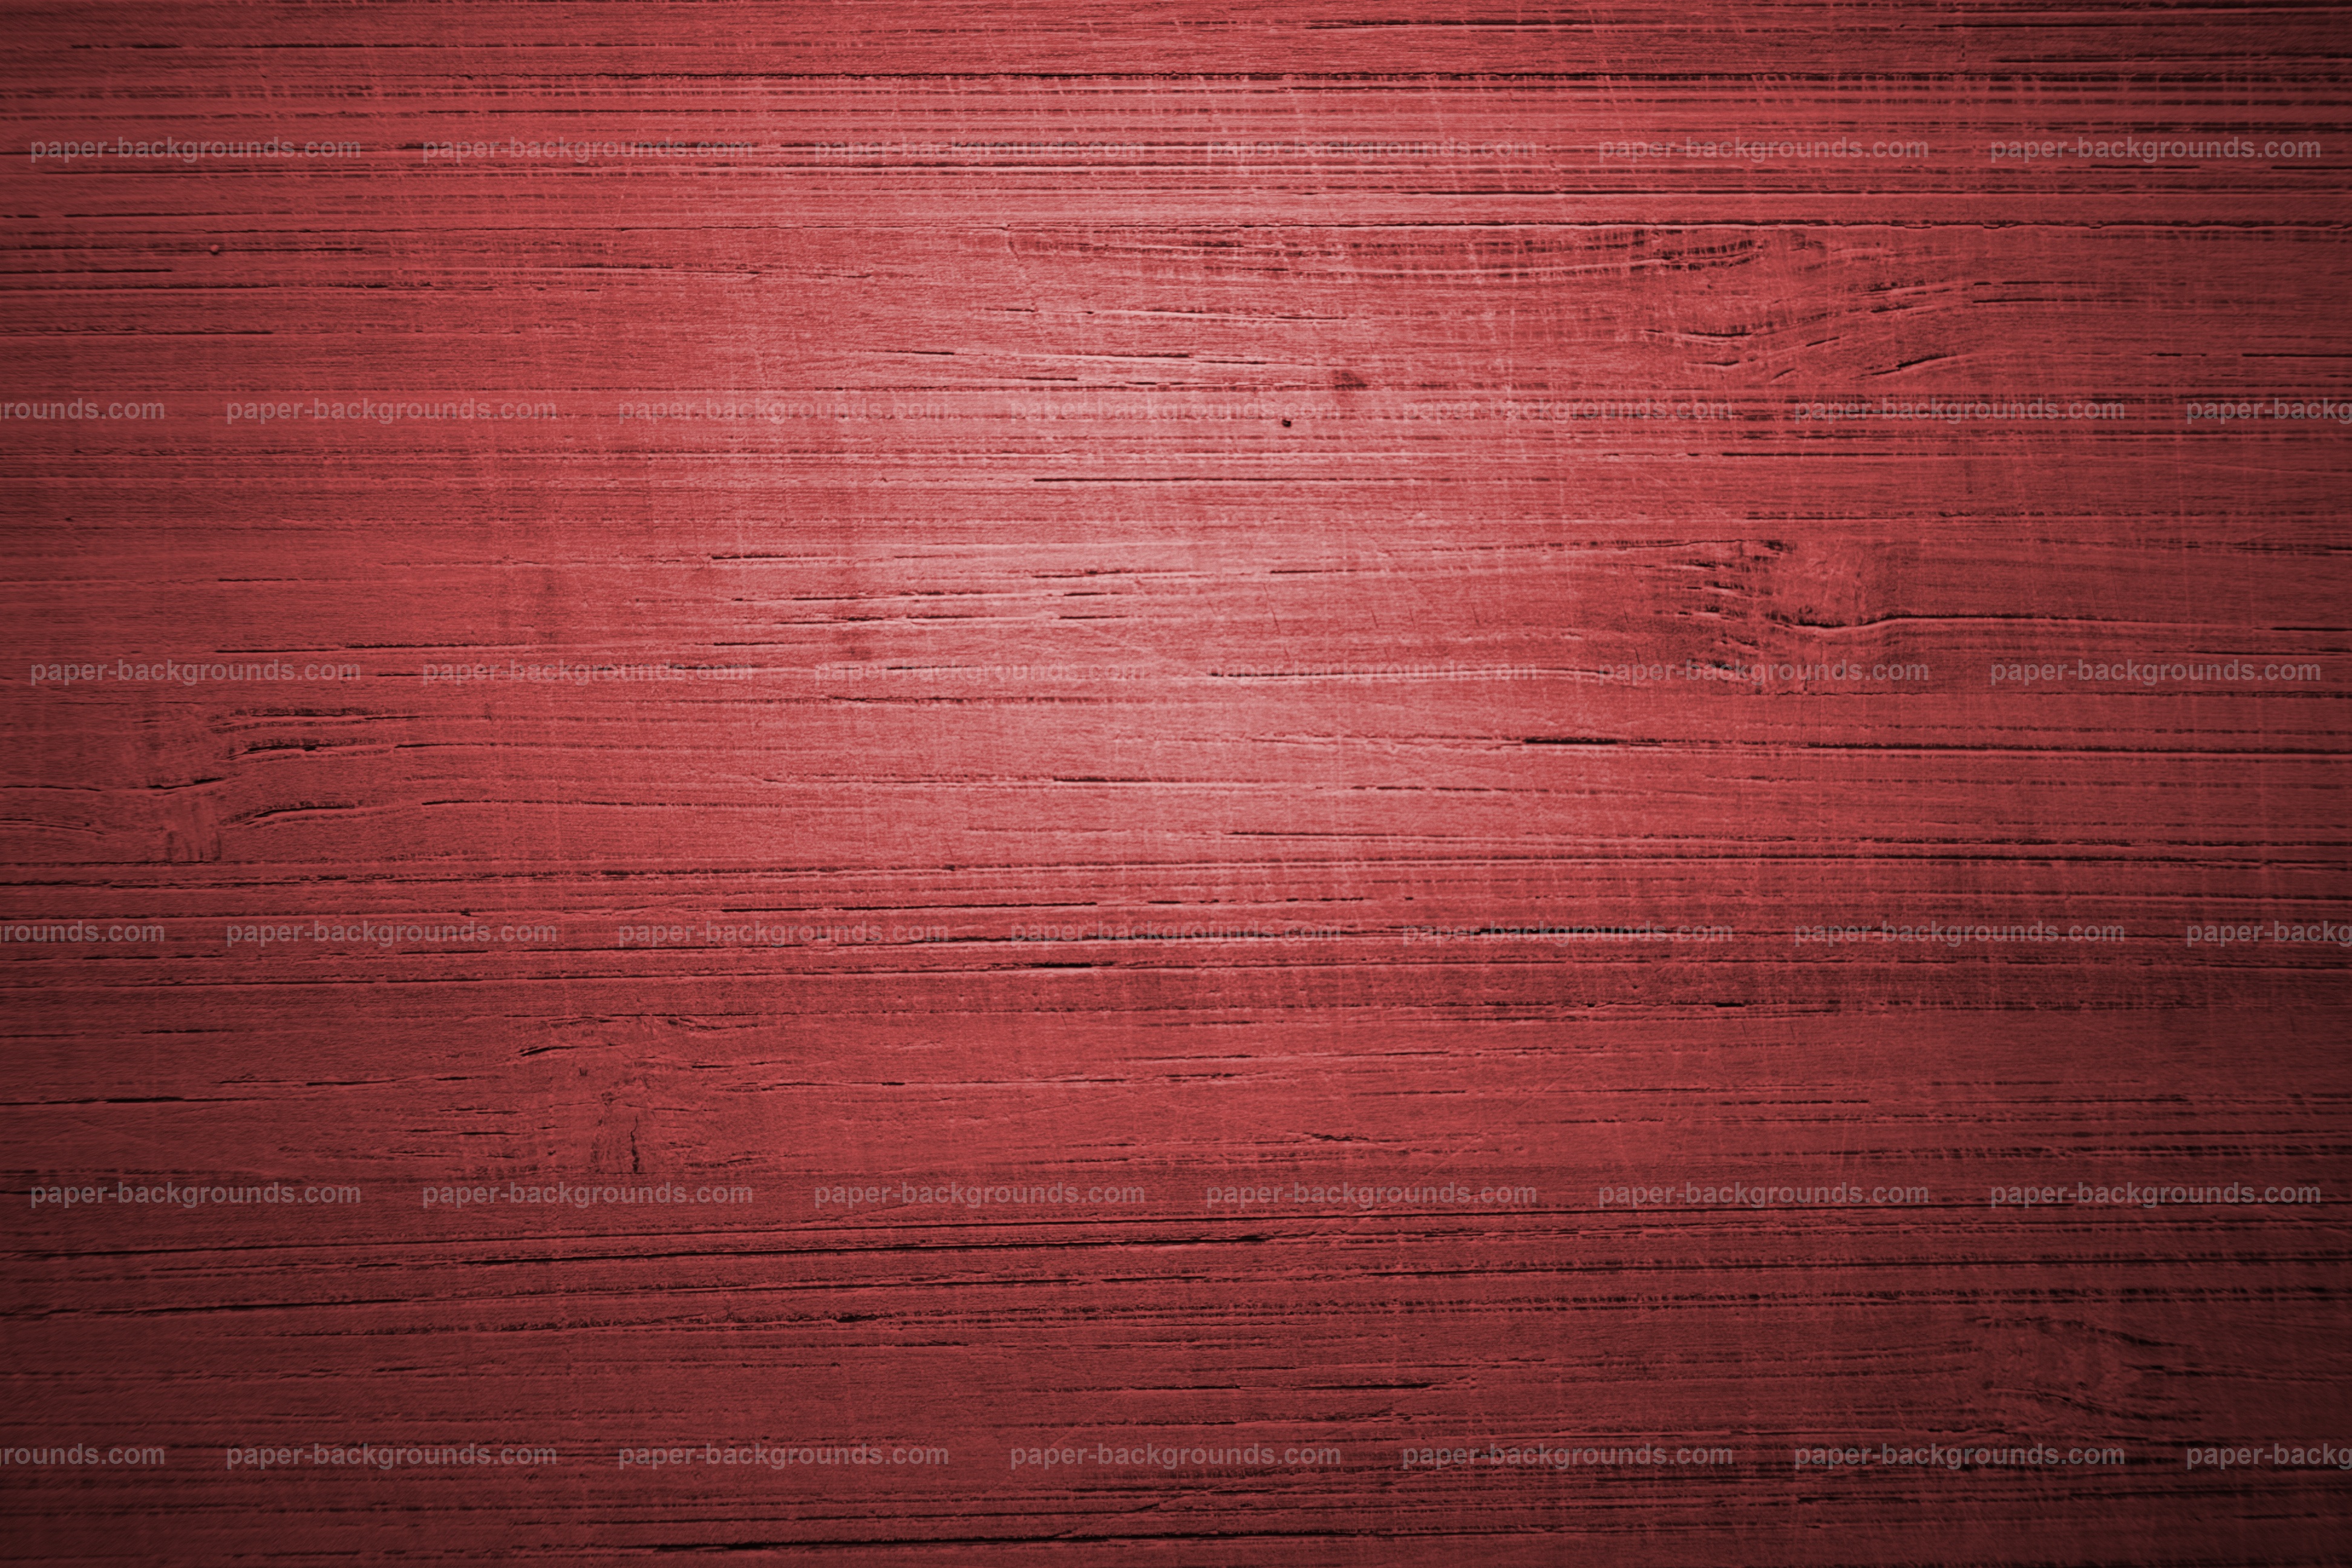 Nền gỗ đỏ chuồng trại miễn phí tải về: Bạn đang tìm kiếm một nền gỗ đỏ chuẩn bị cho dự án của mình? Hãy yên tâm vì bạn đã đến đúng chỗ! Hình nền gỗ đỏ chuồng trại này có thể làm nổi bật bất kỳ thiết kế nào của bạn và được cung cấp miễn phí để tải về. Hãy nhấp vào đường link để xem thêm chi tiết về hình ảnh này.